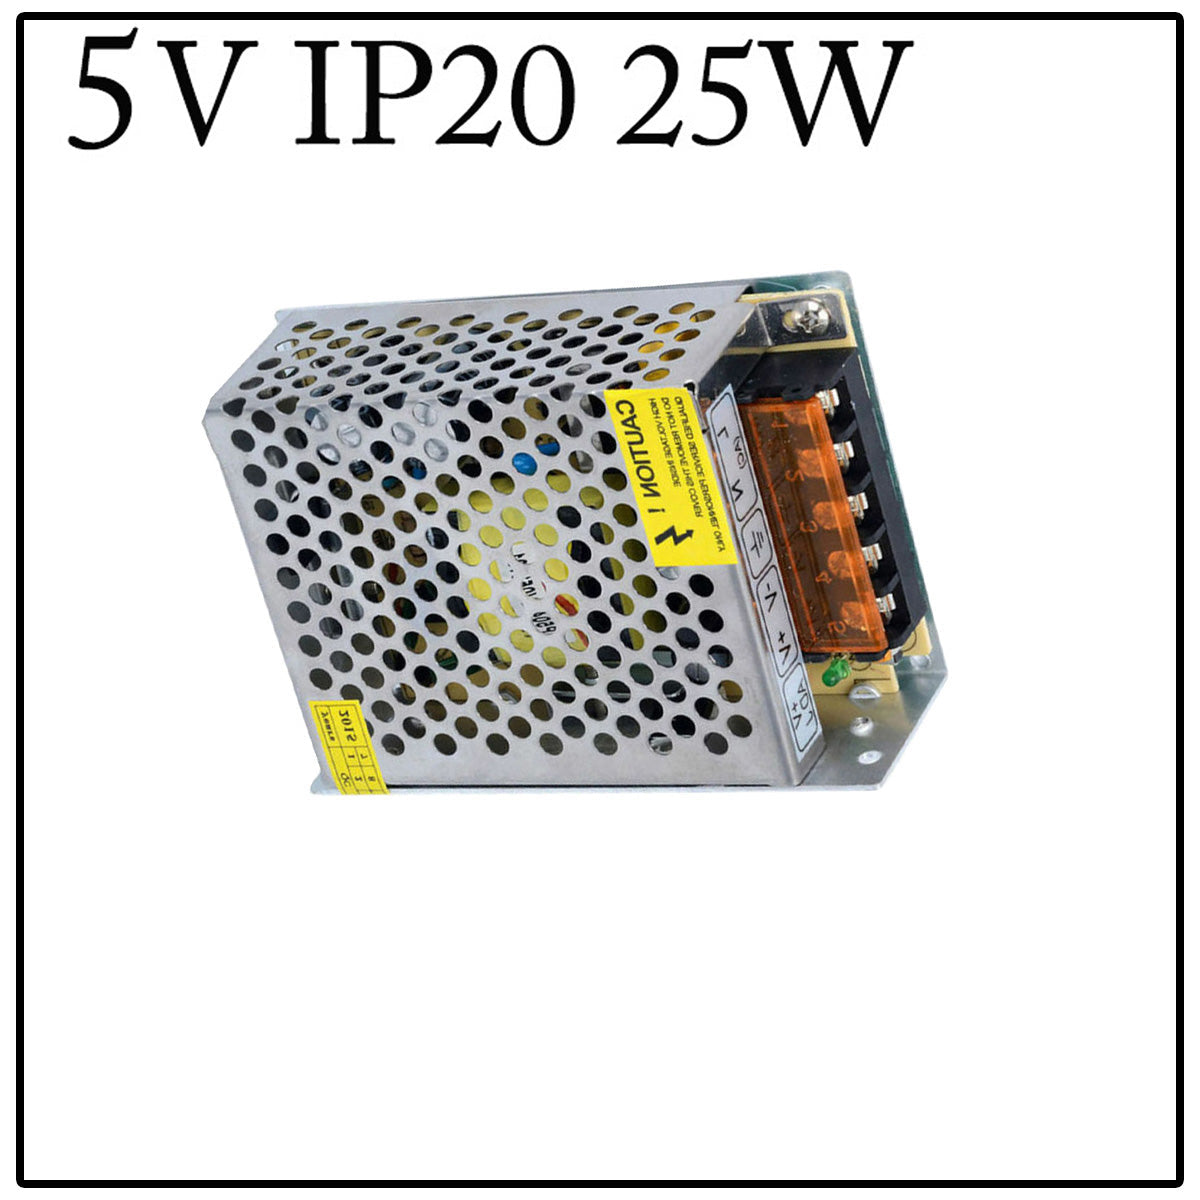 Billede af LED strømforsyning skifte strømforsyning 5V DC, 2A, 25W, IP20 transformer